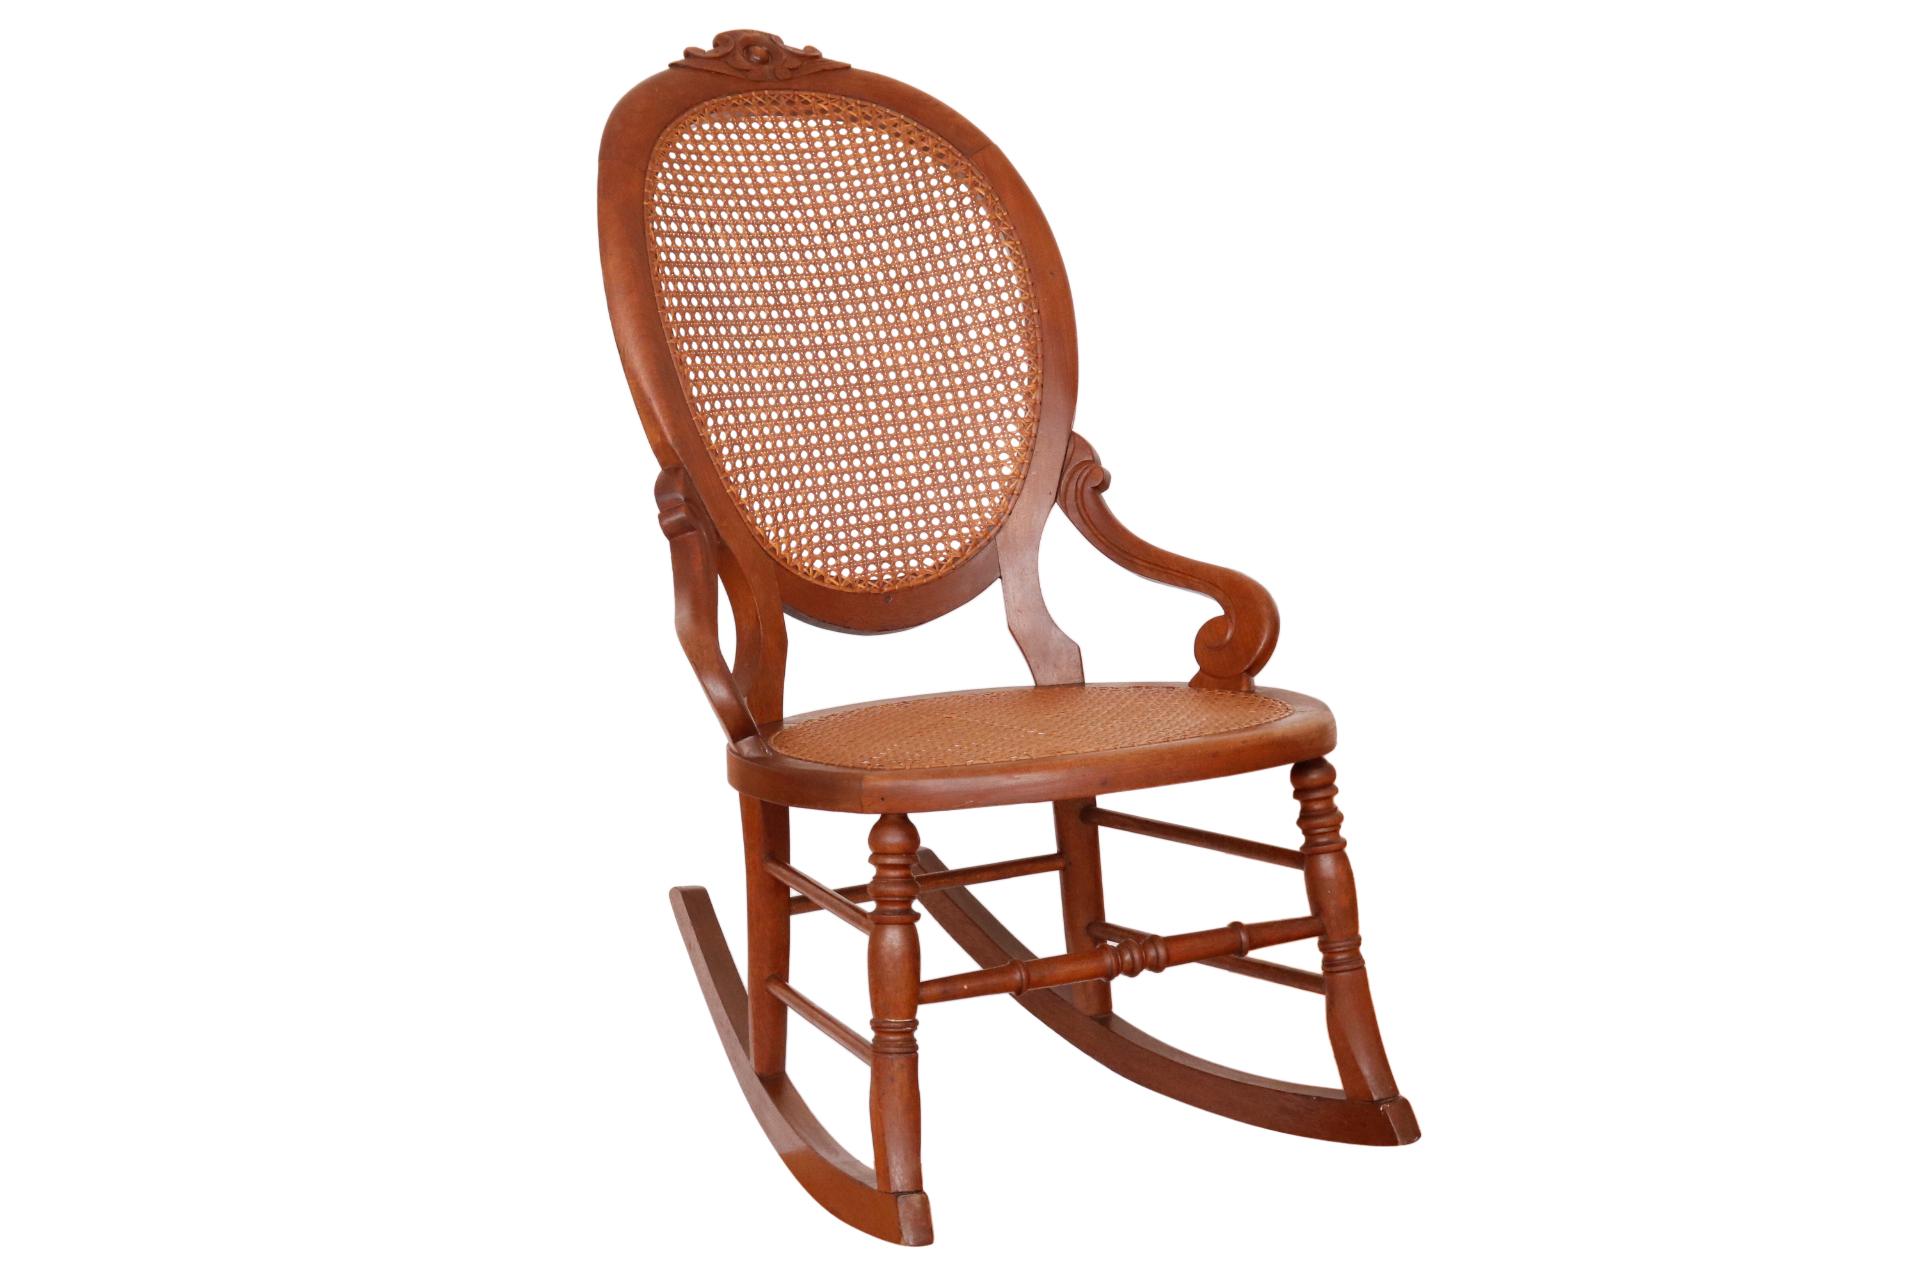 Un antique fauteuil à bascule à cannes. La chaise a un dossier ballon canné sculpté sur la crête d'une simple fleur. Les supports de bras, qui s'étendent vers l'extérieur, défilent sur le siège. Les pieds tournés sont reliés à une civière en forme